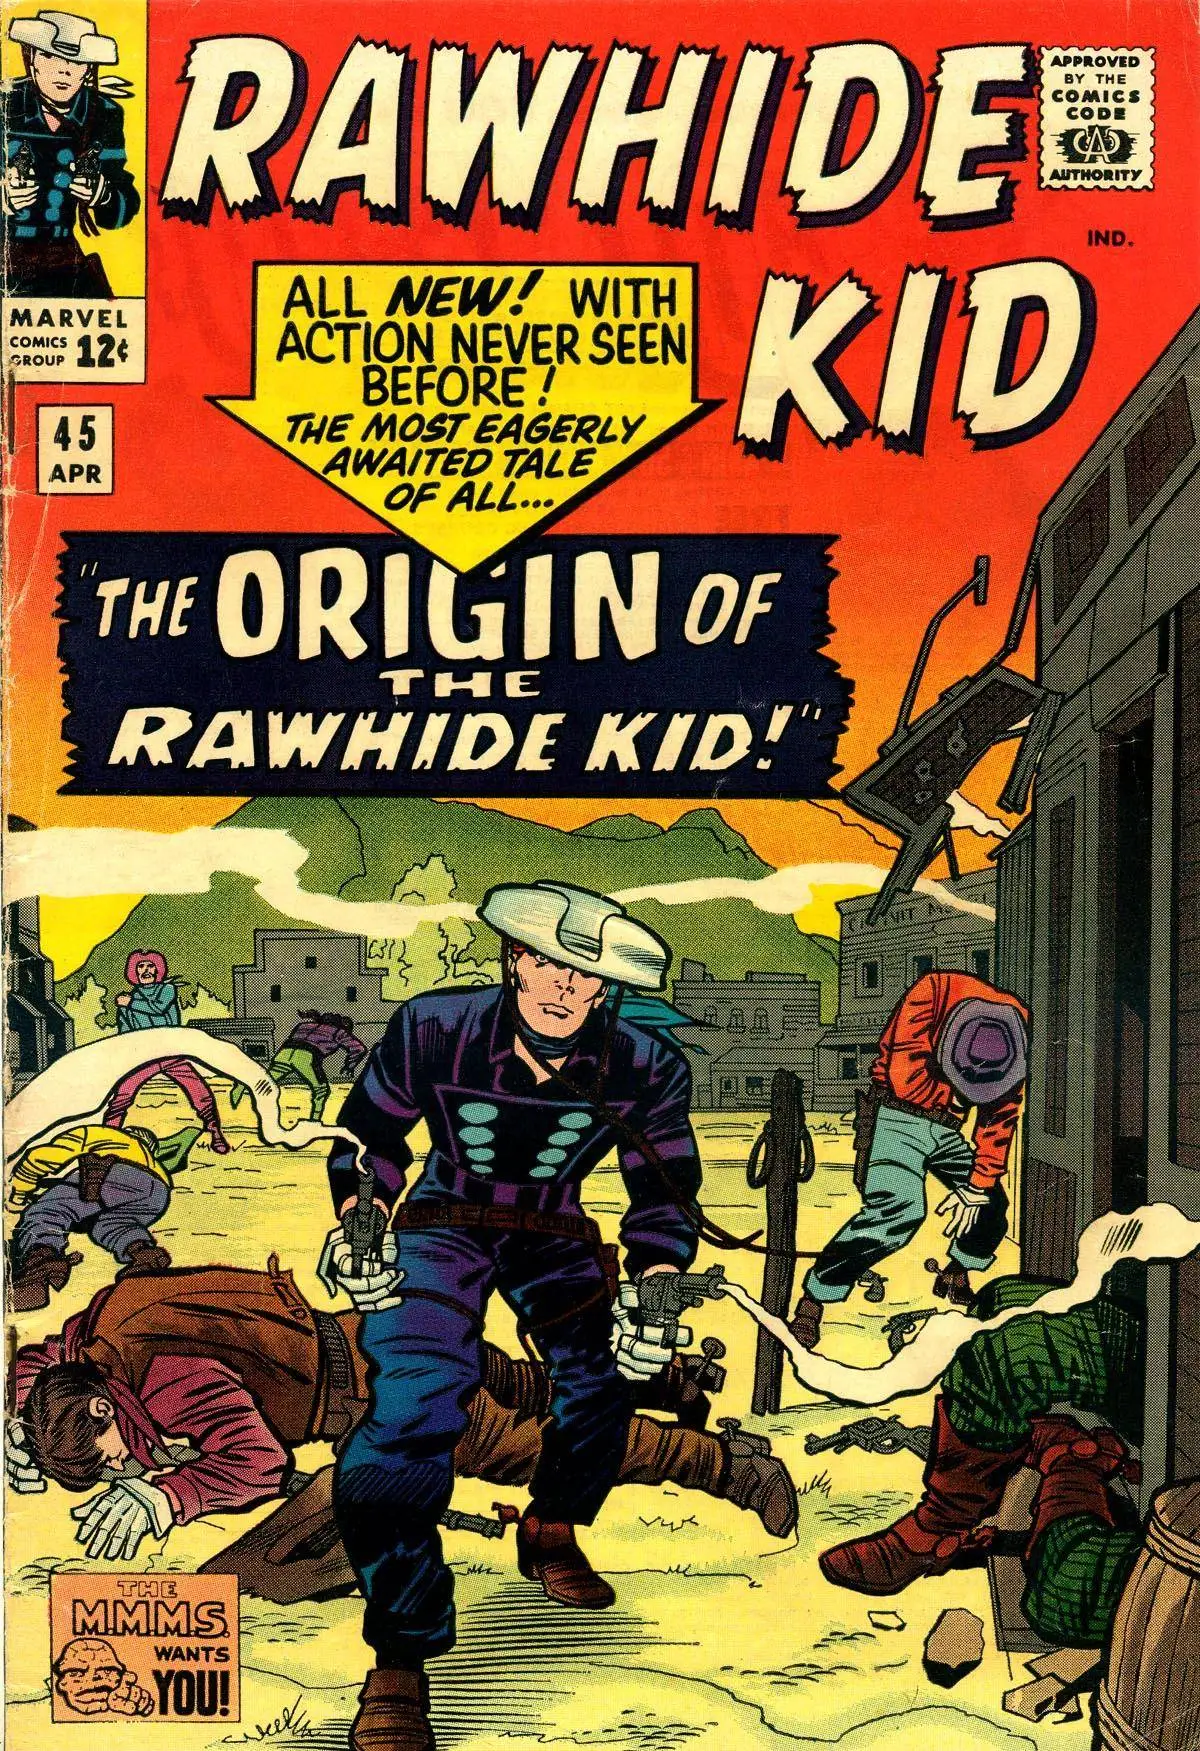 Rawhide Kid v1 045 1965 Punkrat